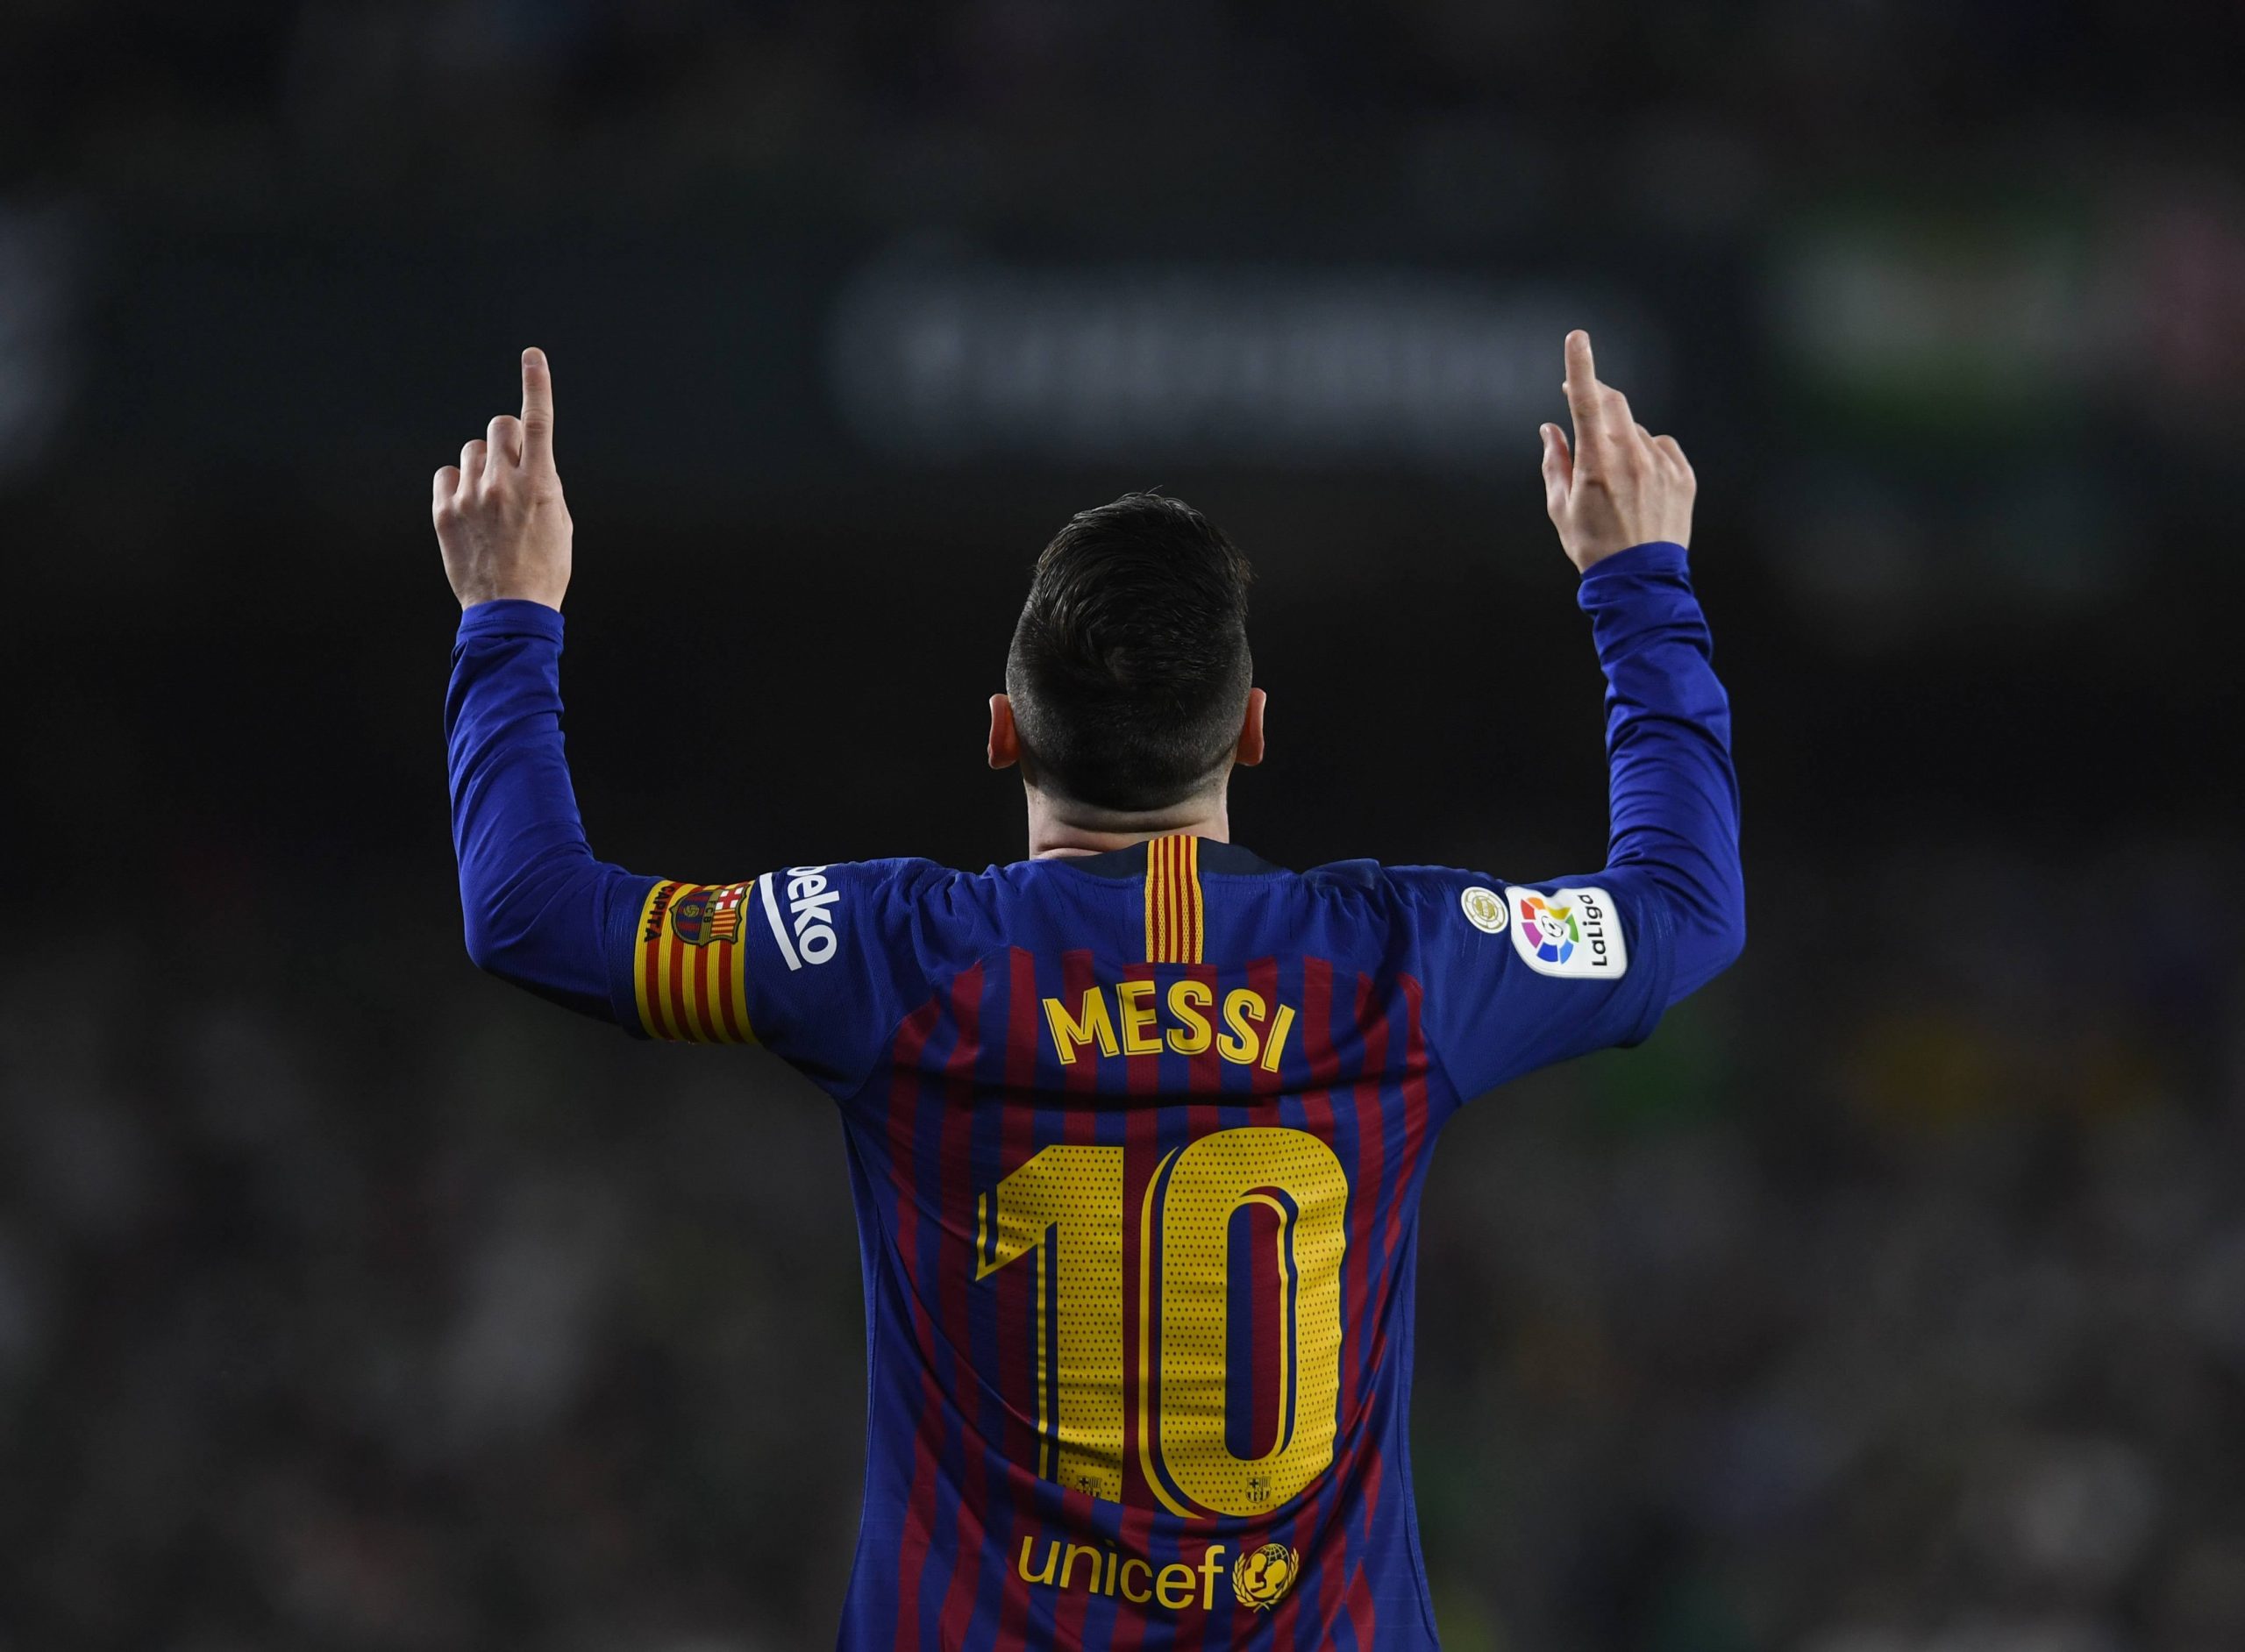 La Evolución de Lionel Messi, Capítulo 3: El Messi que hace de todo